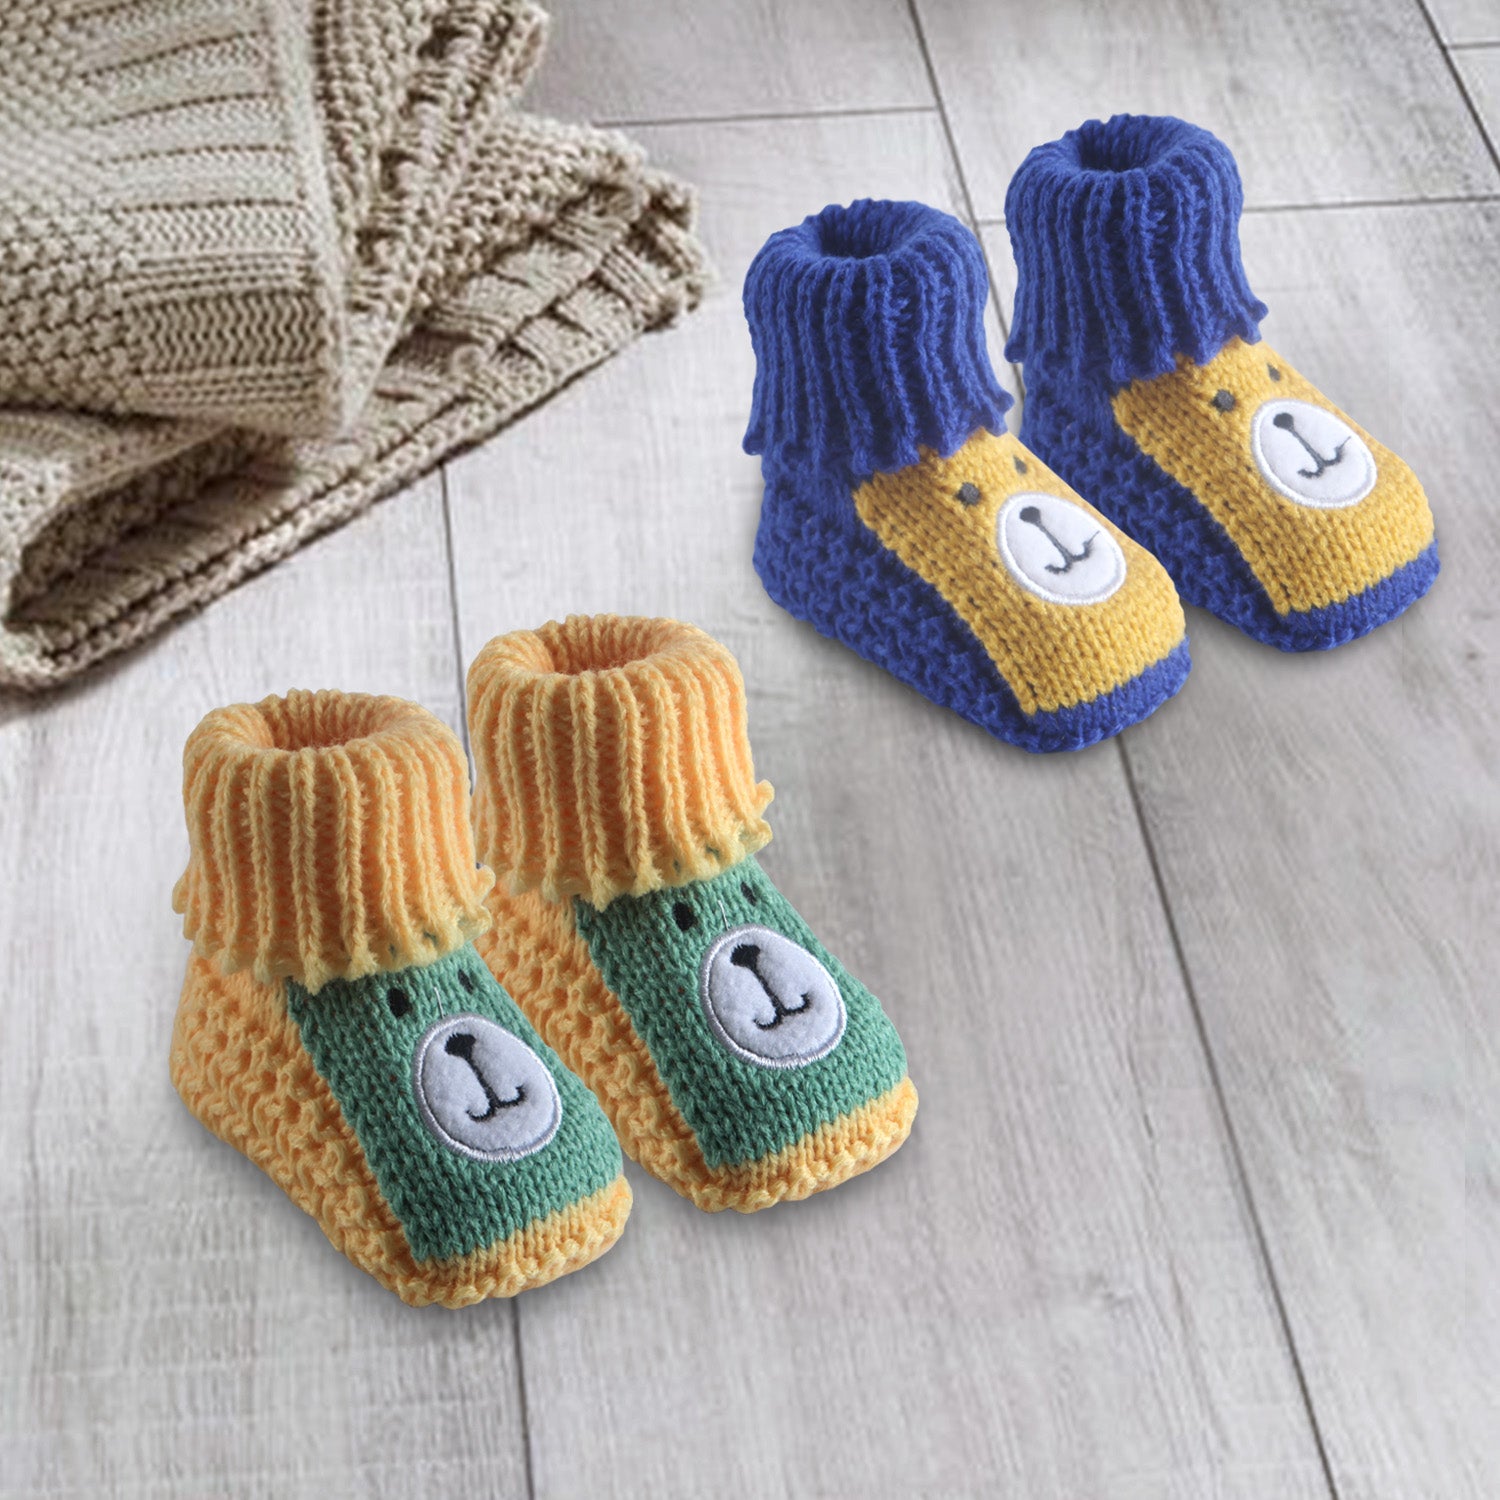 Baby Moo Newborn Crochet Woollen Booties Teddy - Yellow, Blue